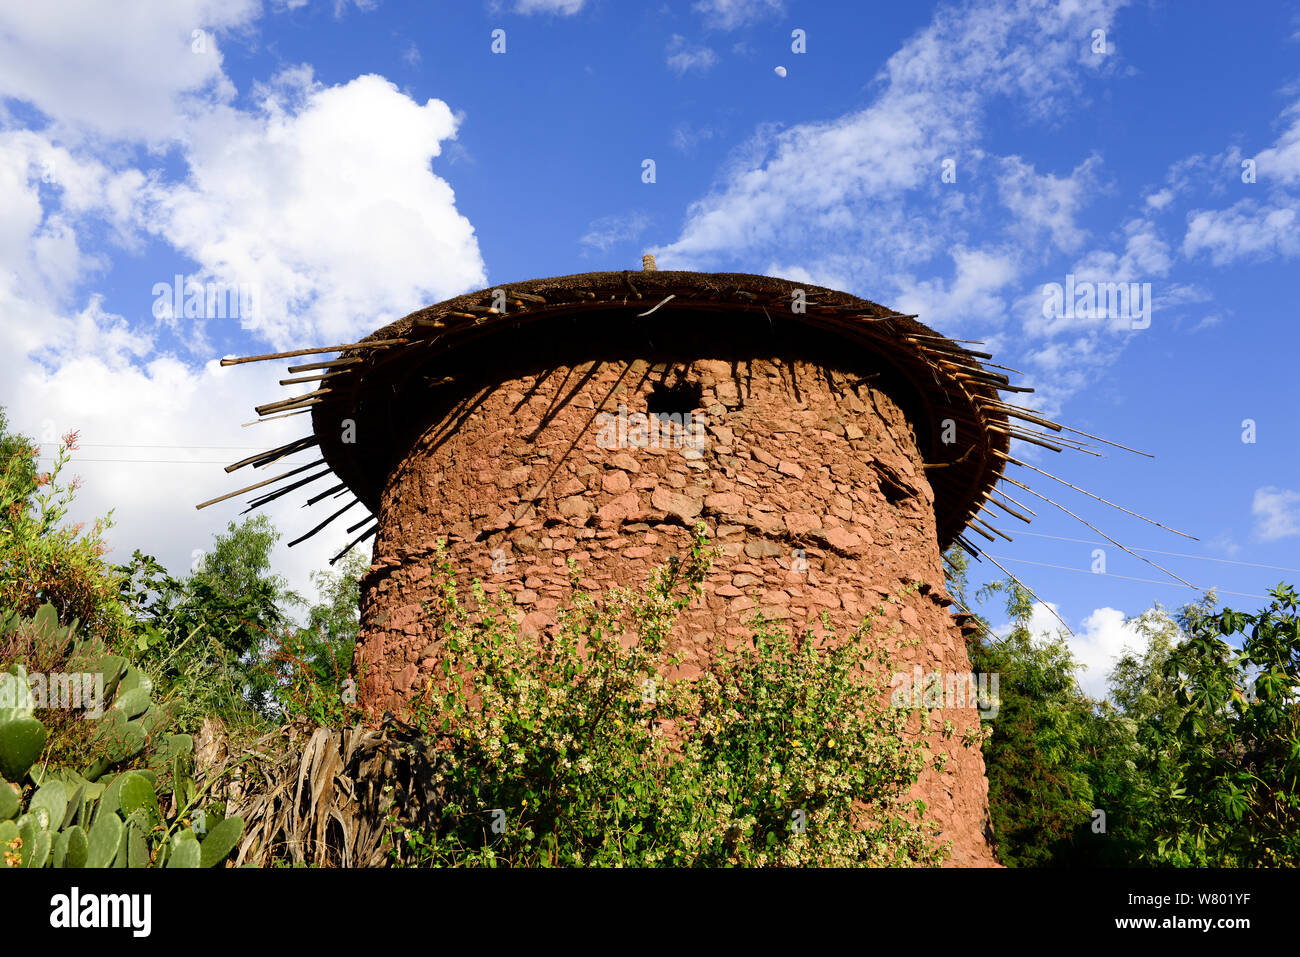 Maison de terre ronde traditionnelle, Lalibela. UNESCO World Heritage Site. L'Éthiopie, décembre 2014. Banque D'Images